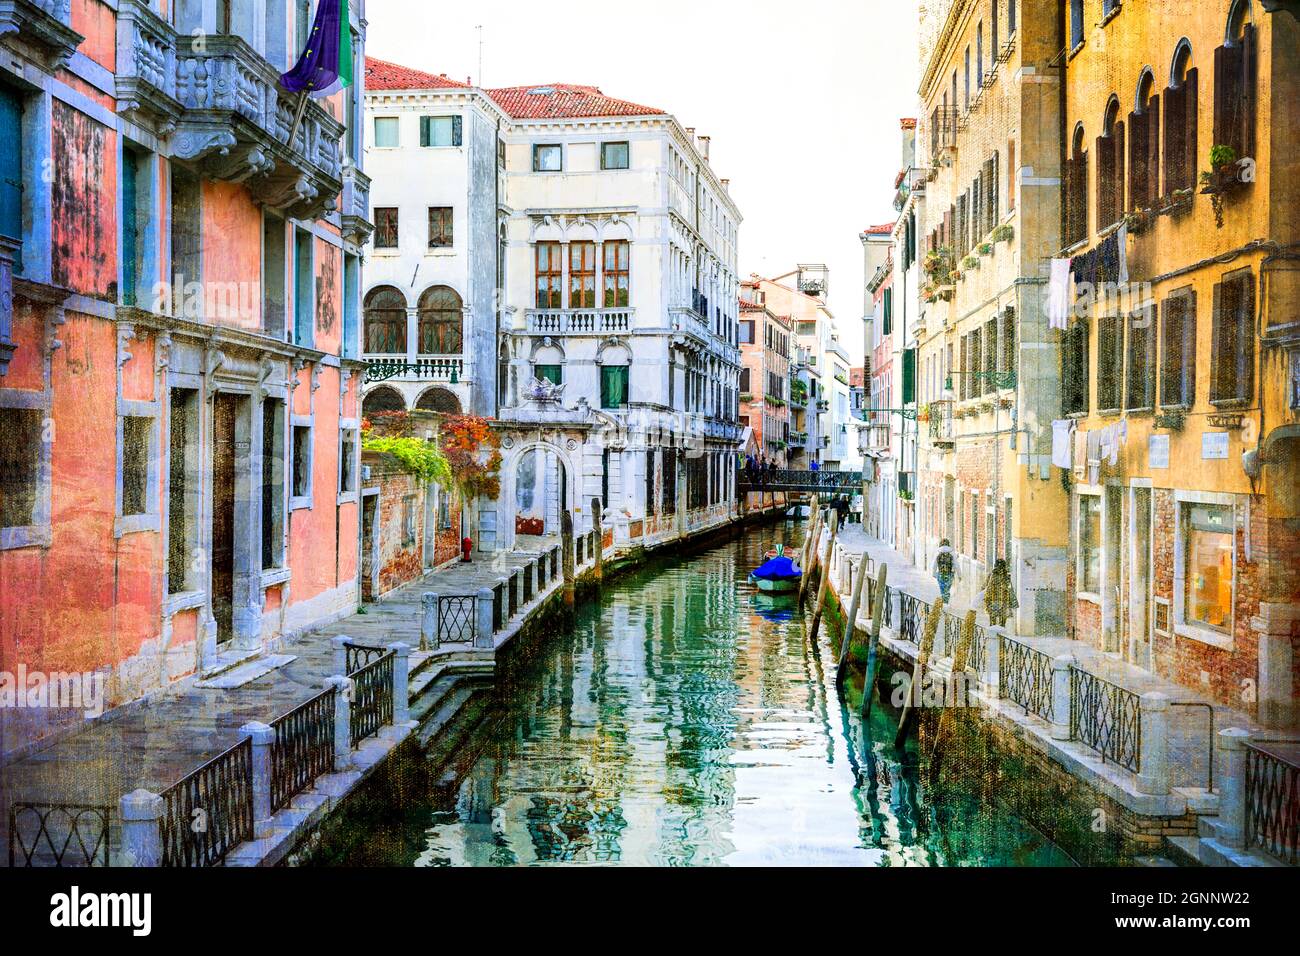 Venedig, Italien. Romantische venezianische Kanäle mit engen Gassen. Künstlerisches Bild im Retro-Malstil Stockfoto